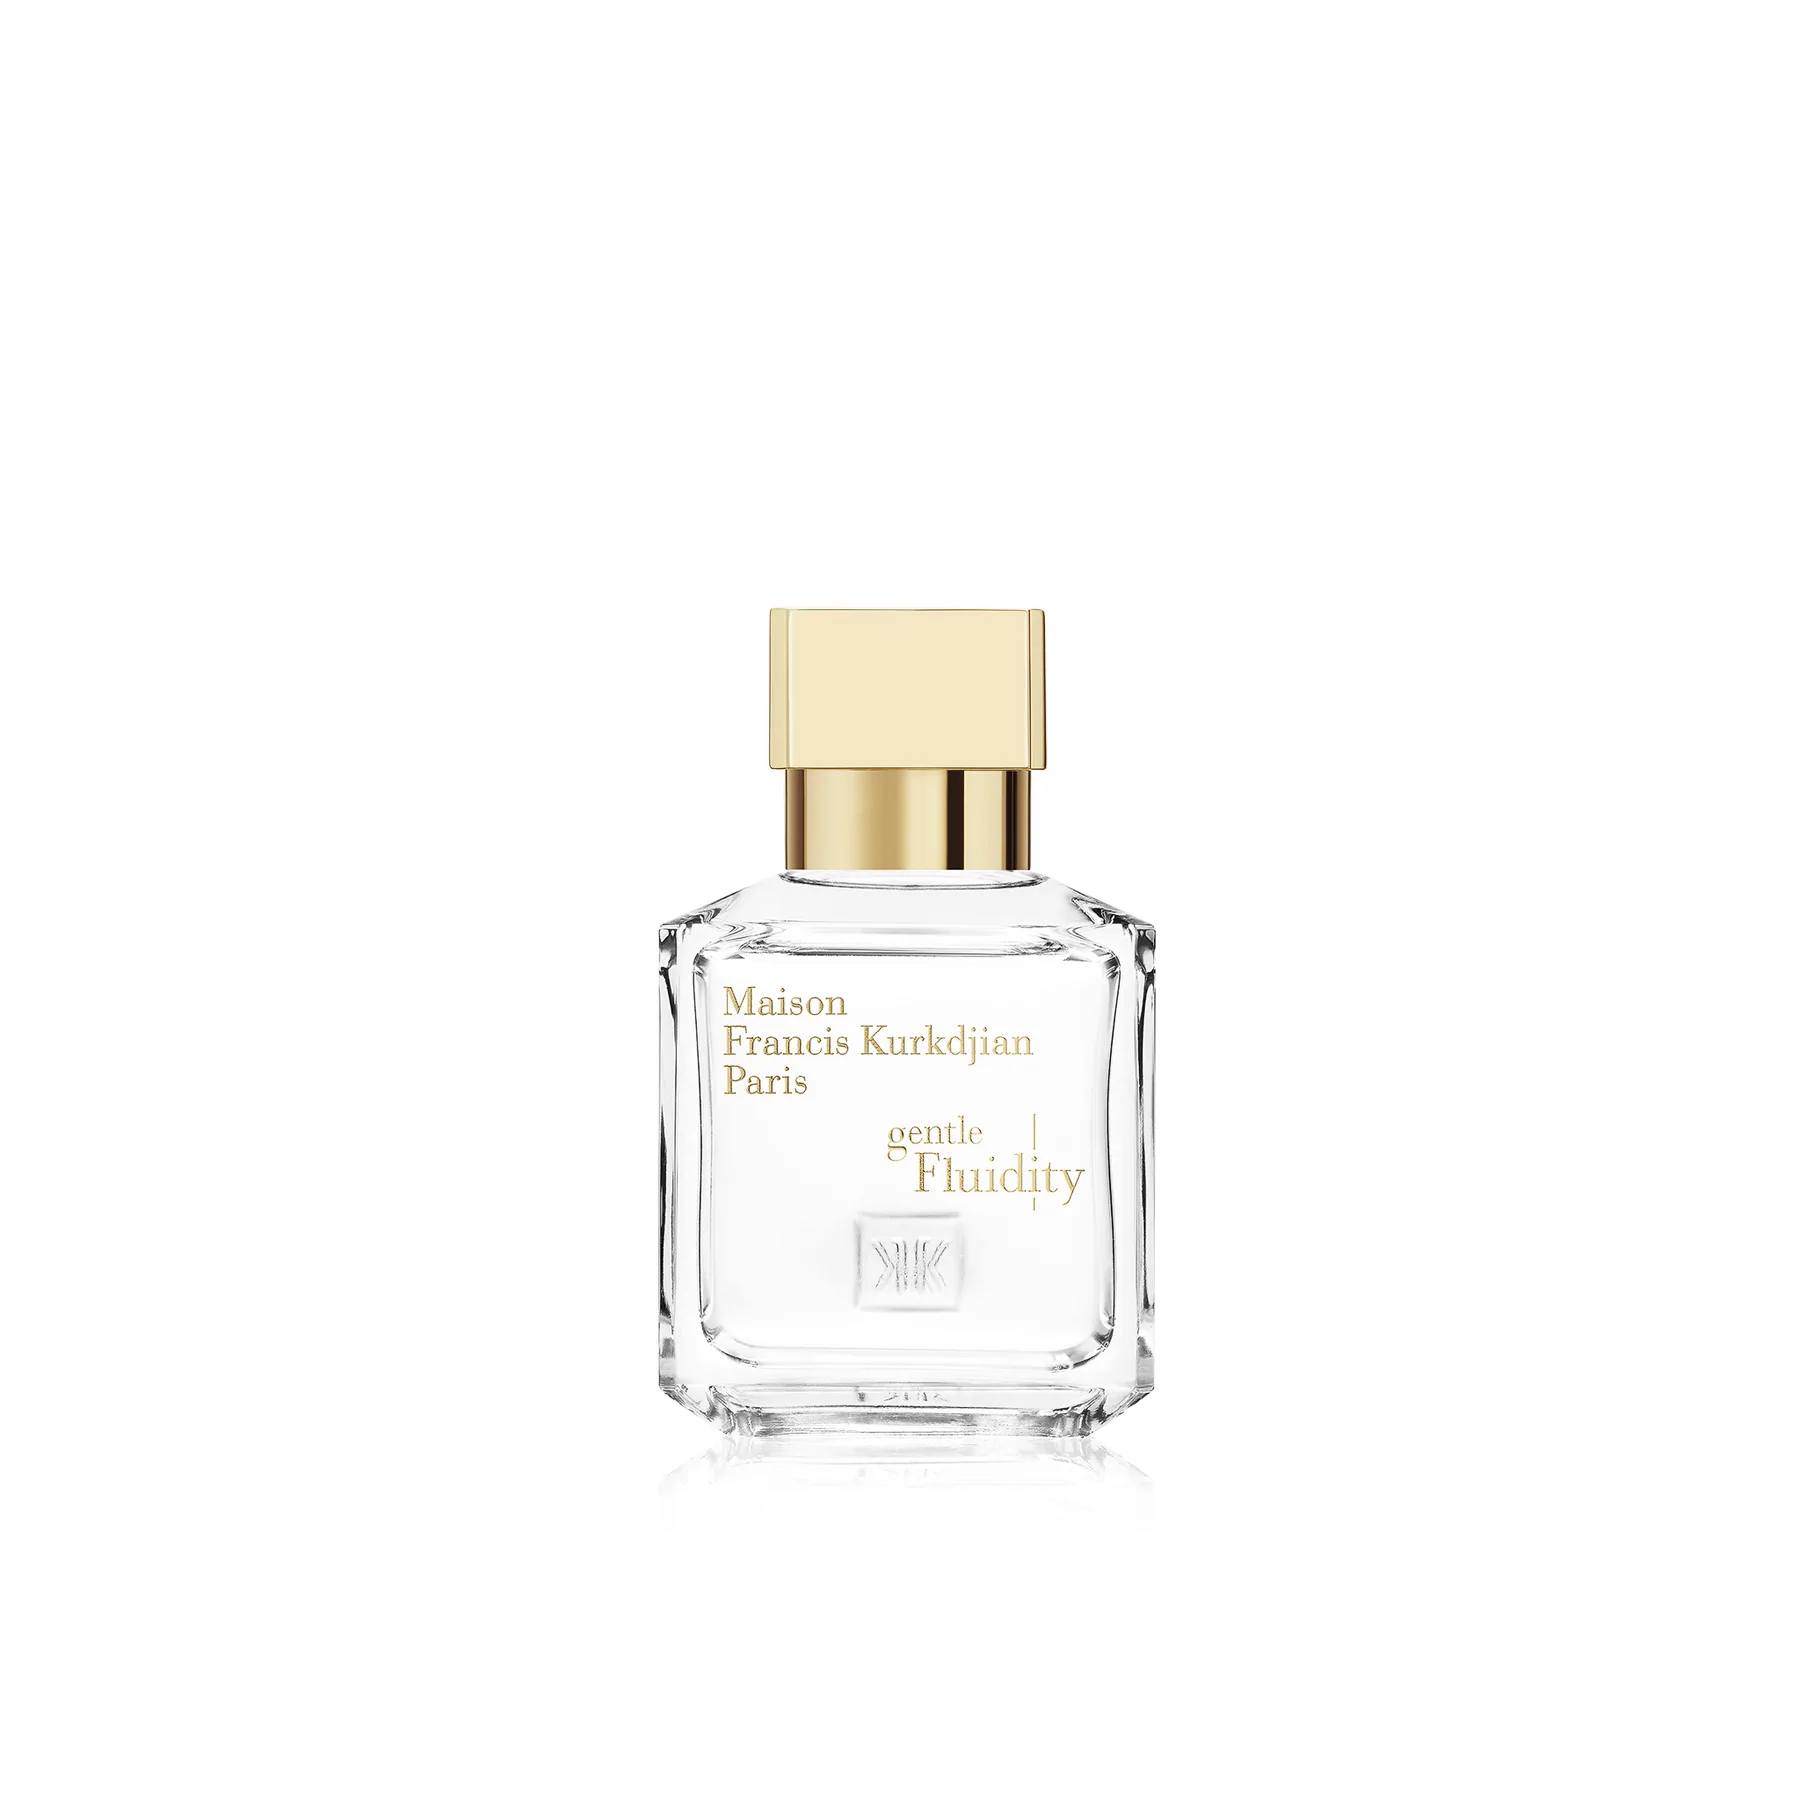 Gentle Fluidity Gold Eau de Parfum